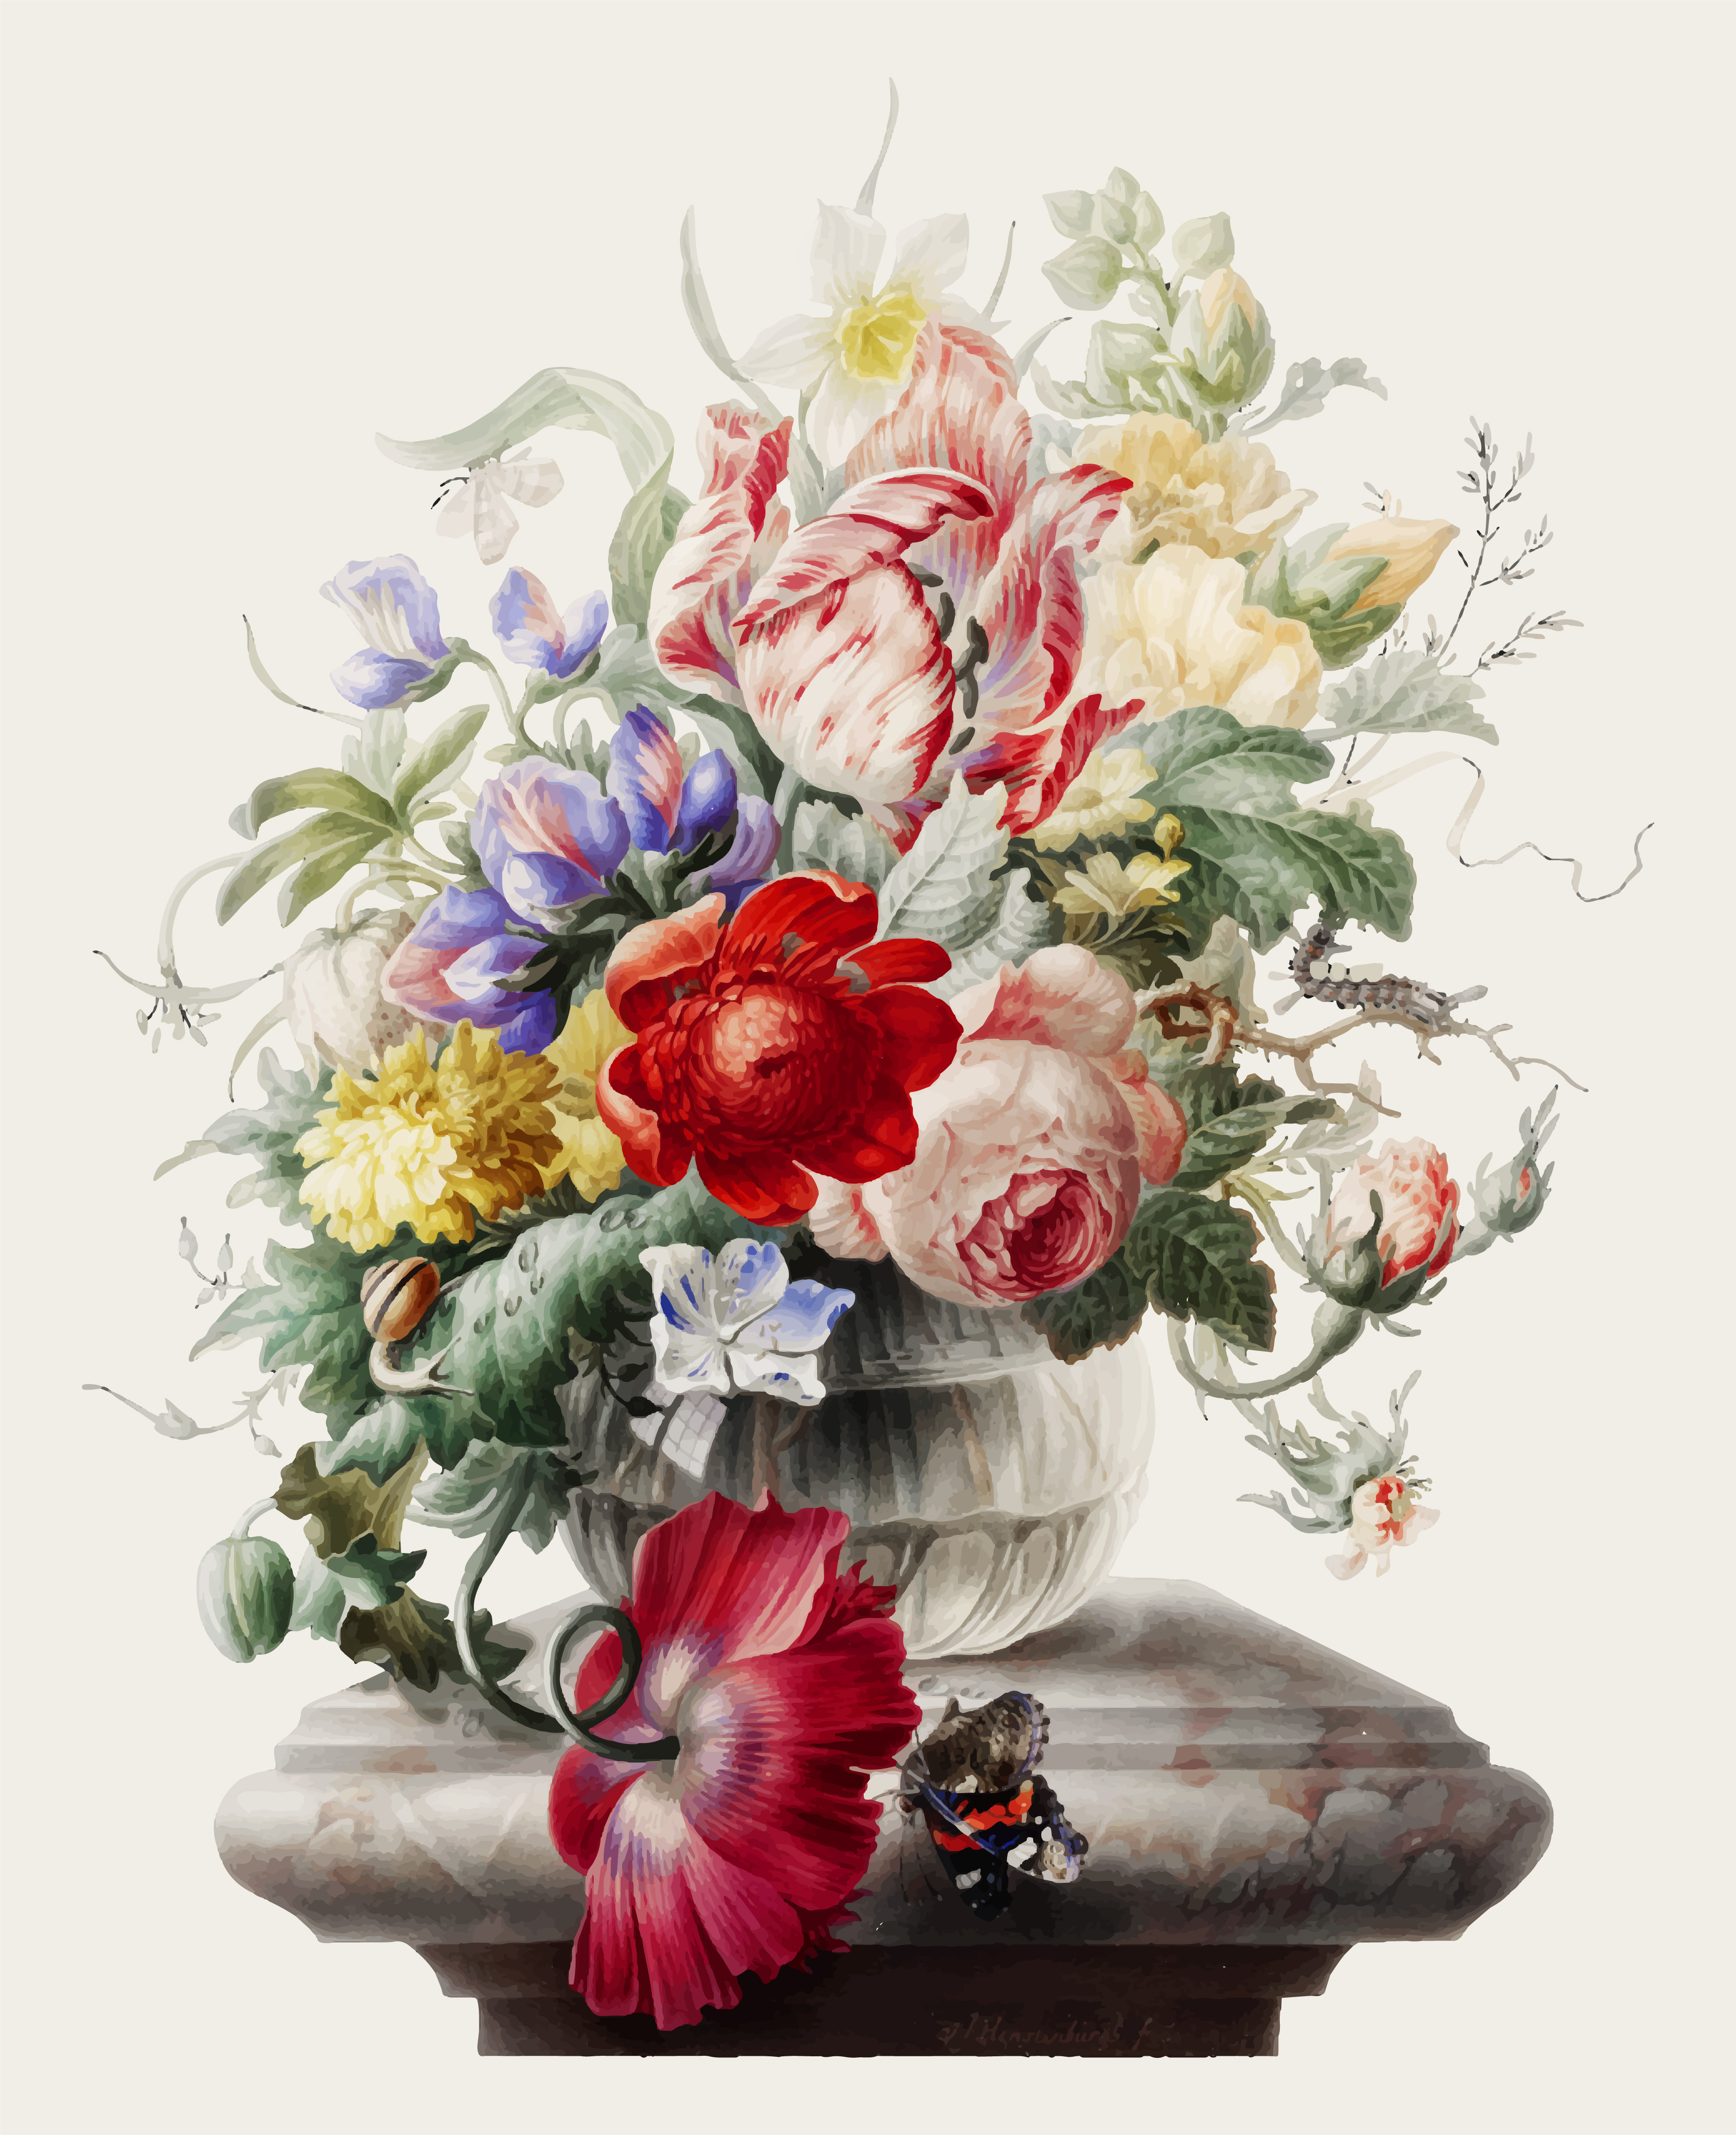 Vintage illustration of Flowers in a glass vase - Download ...